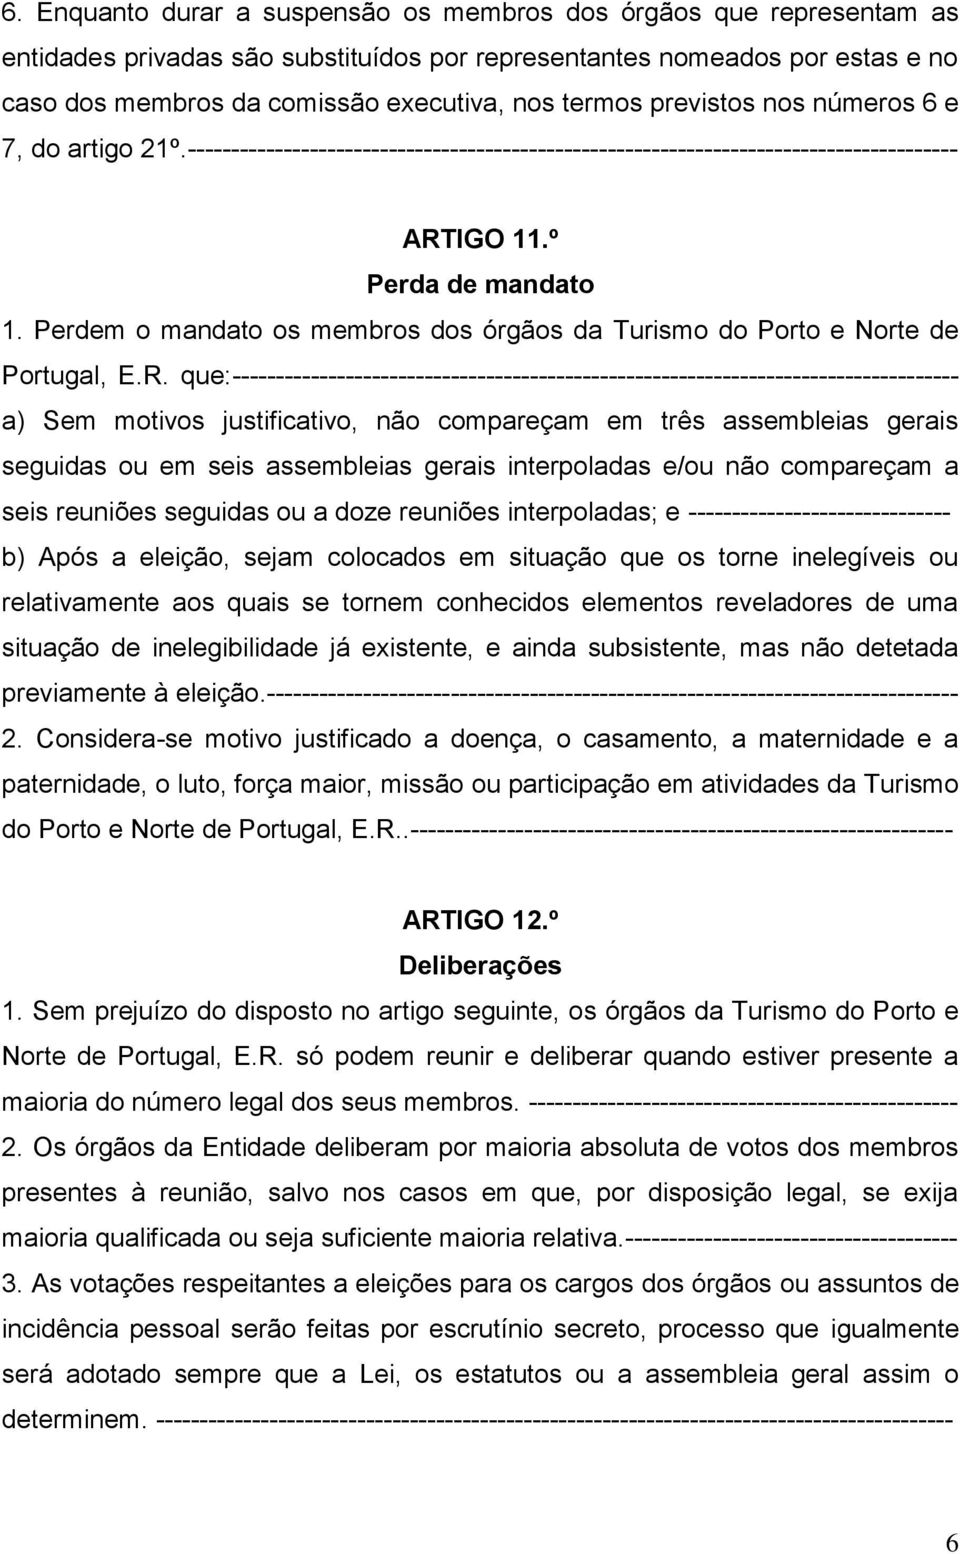 Perdem o mandato os membros dos órgãos da Turismo do Porto e Norte de Portugal, E.R.